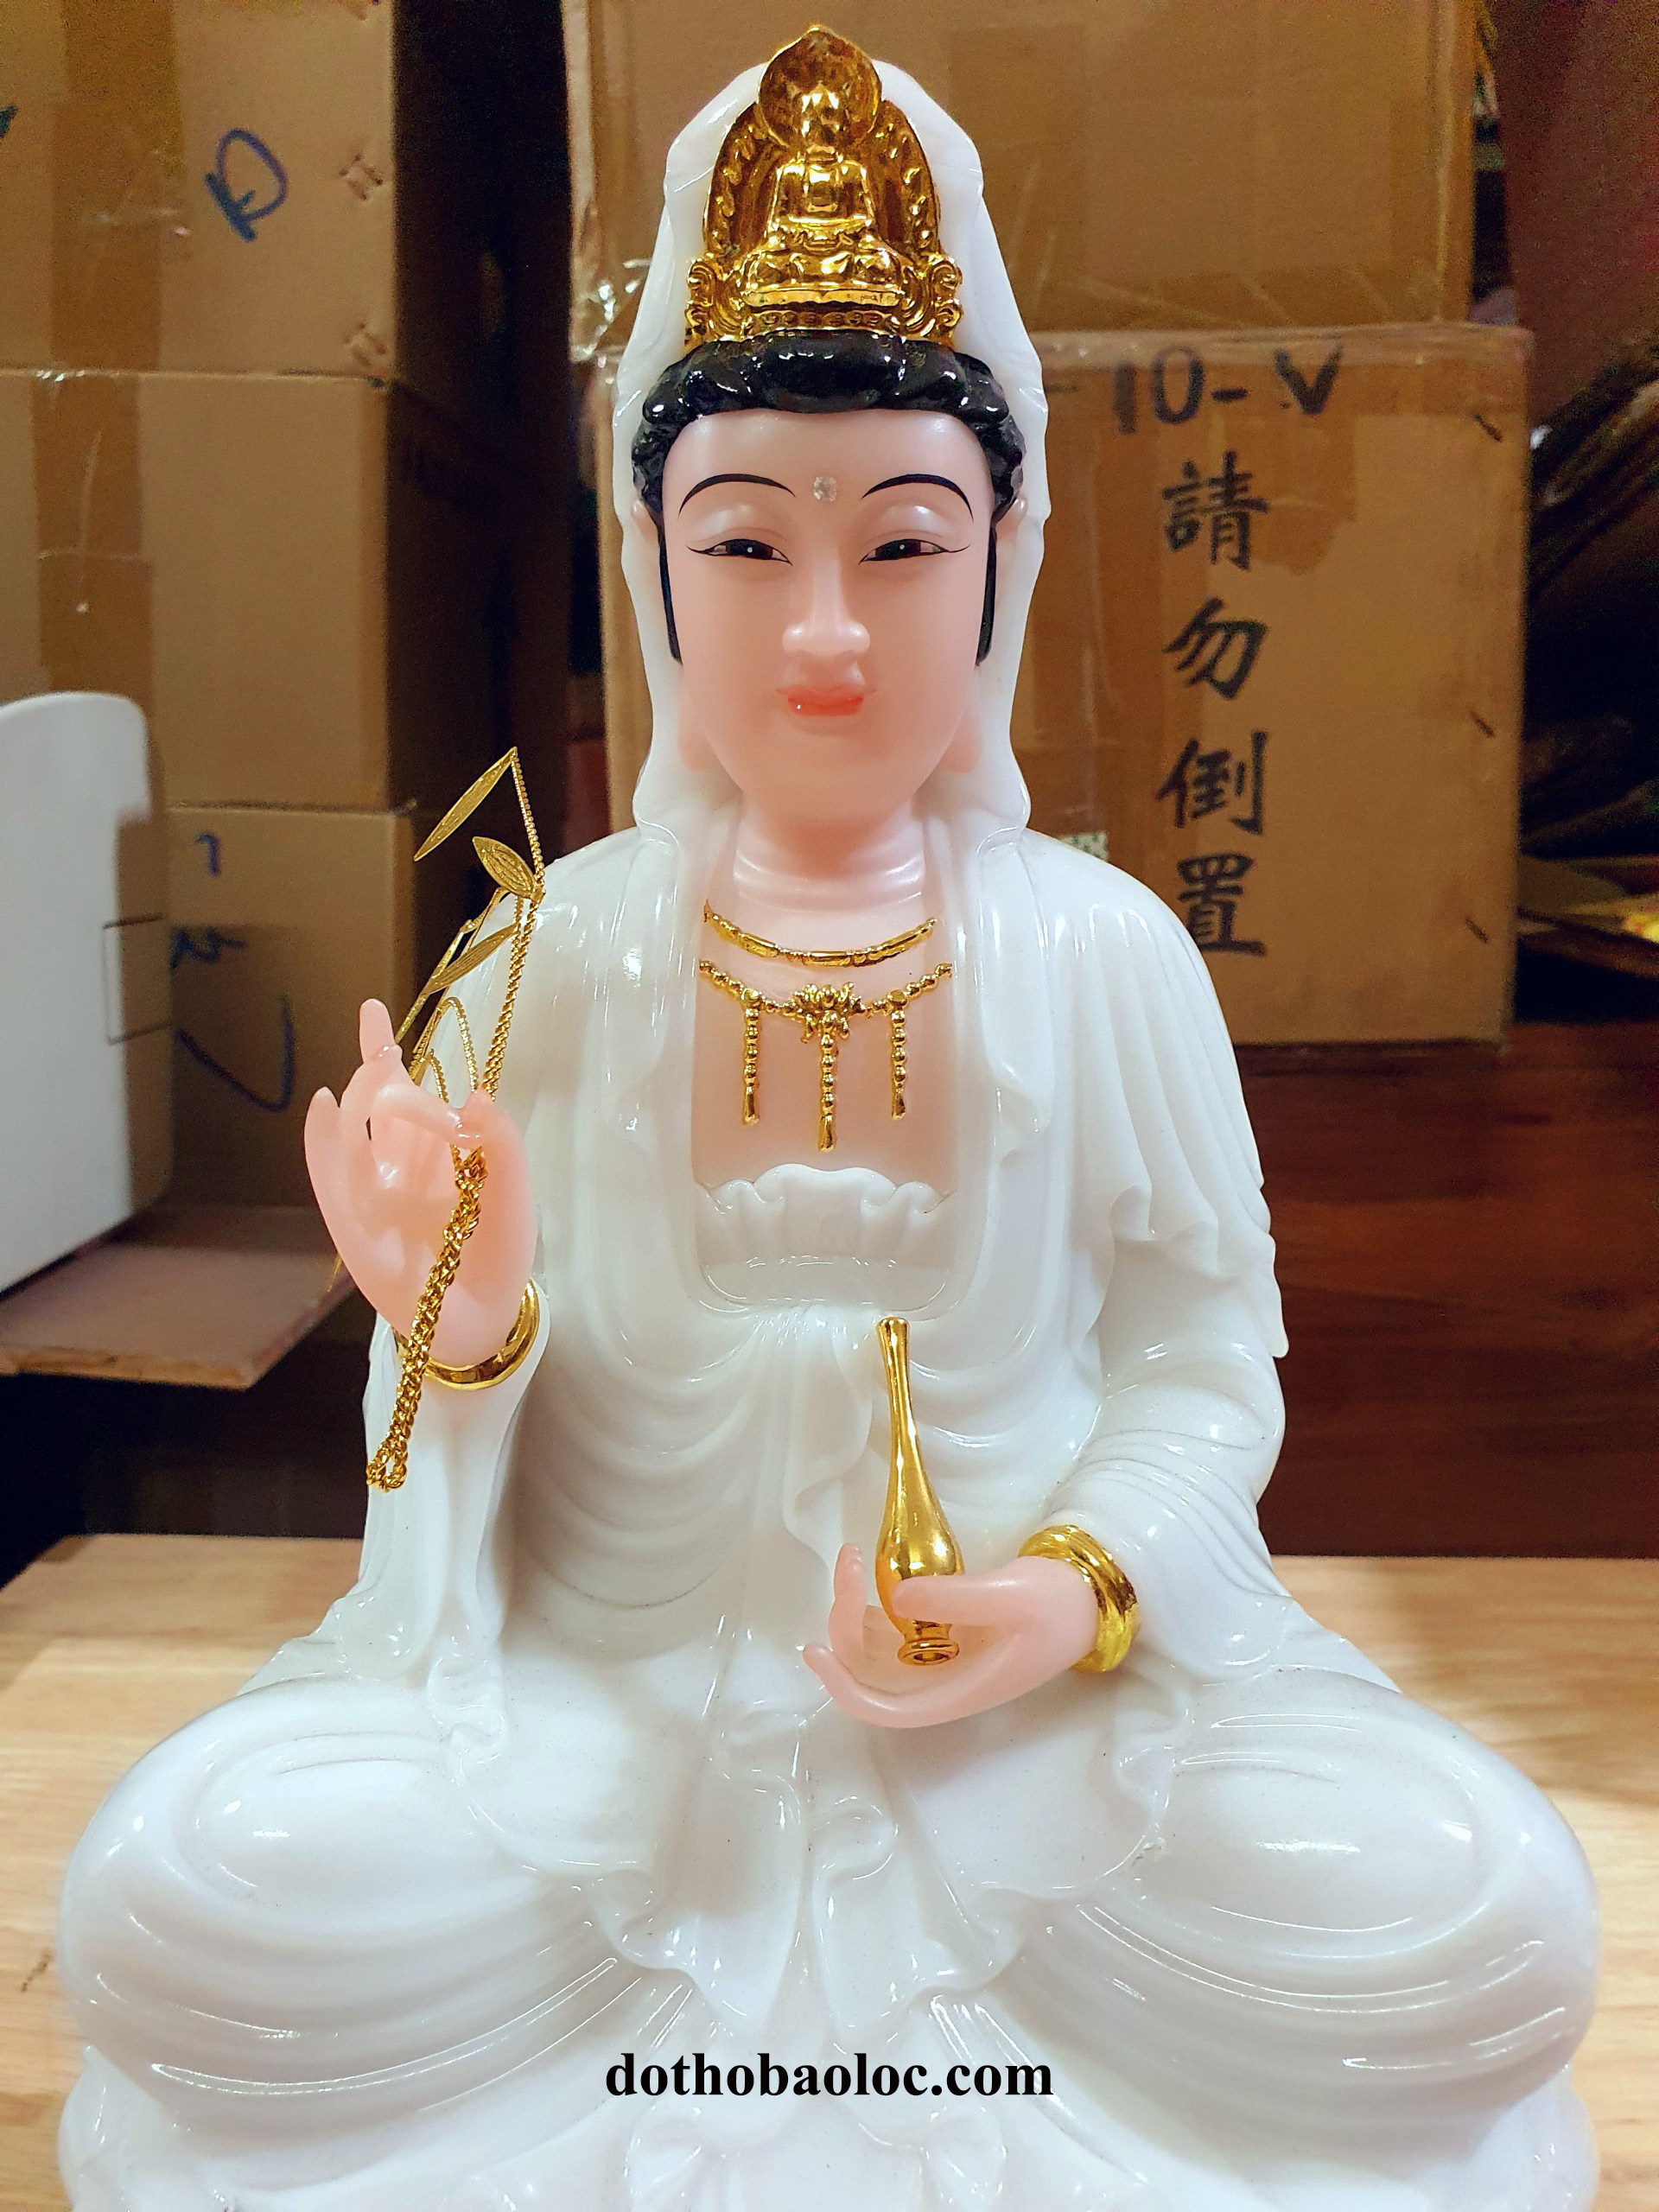 Tượng Phật Quan Âm bằng đá nhập khẩu từ Đài Loan 14inch